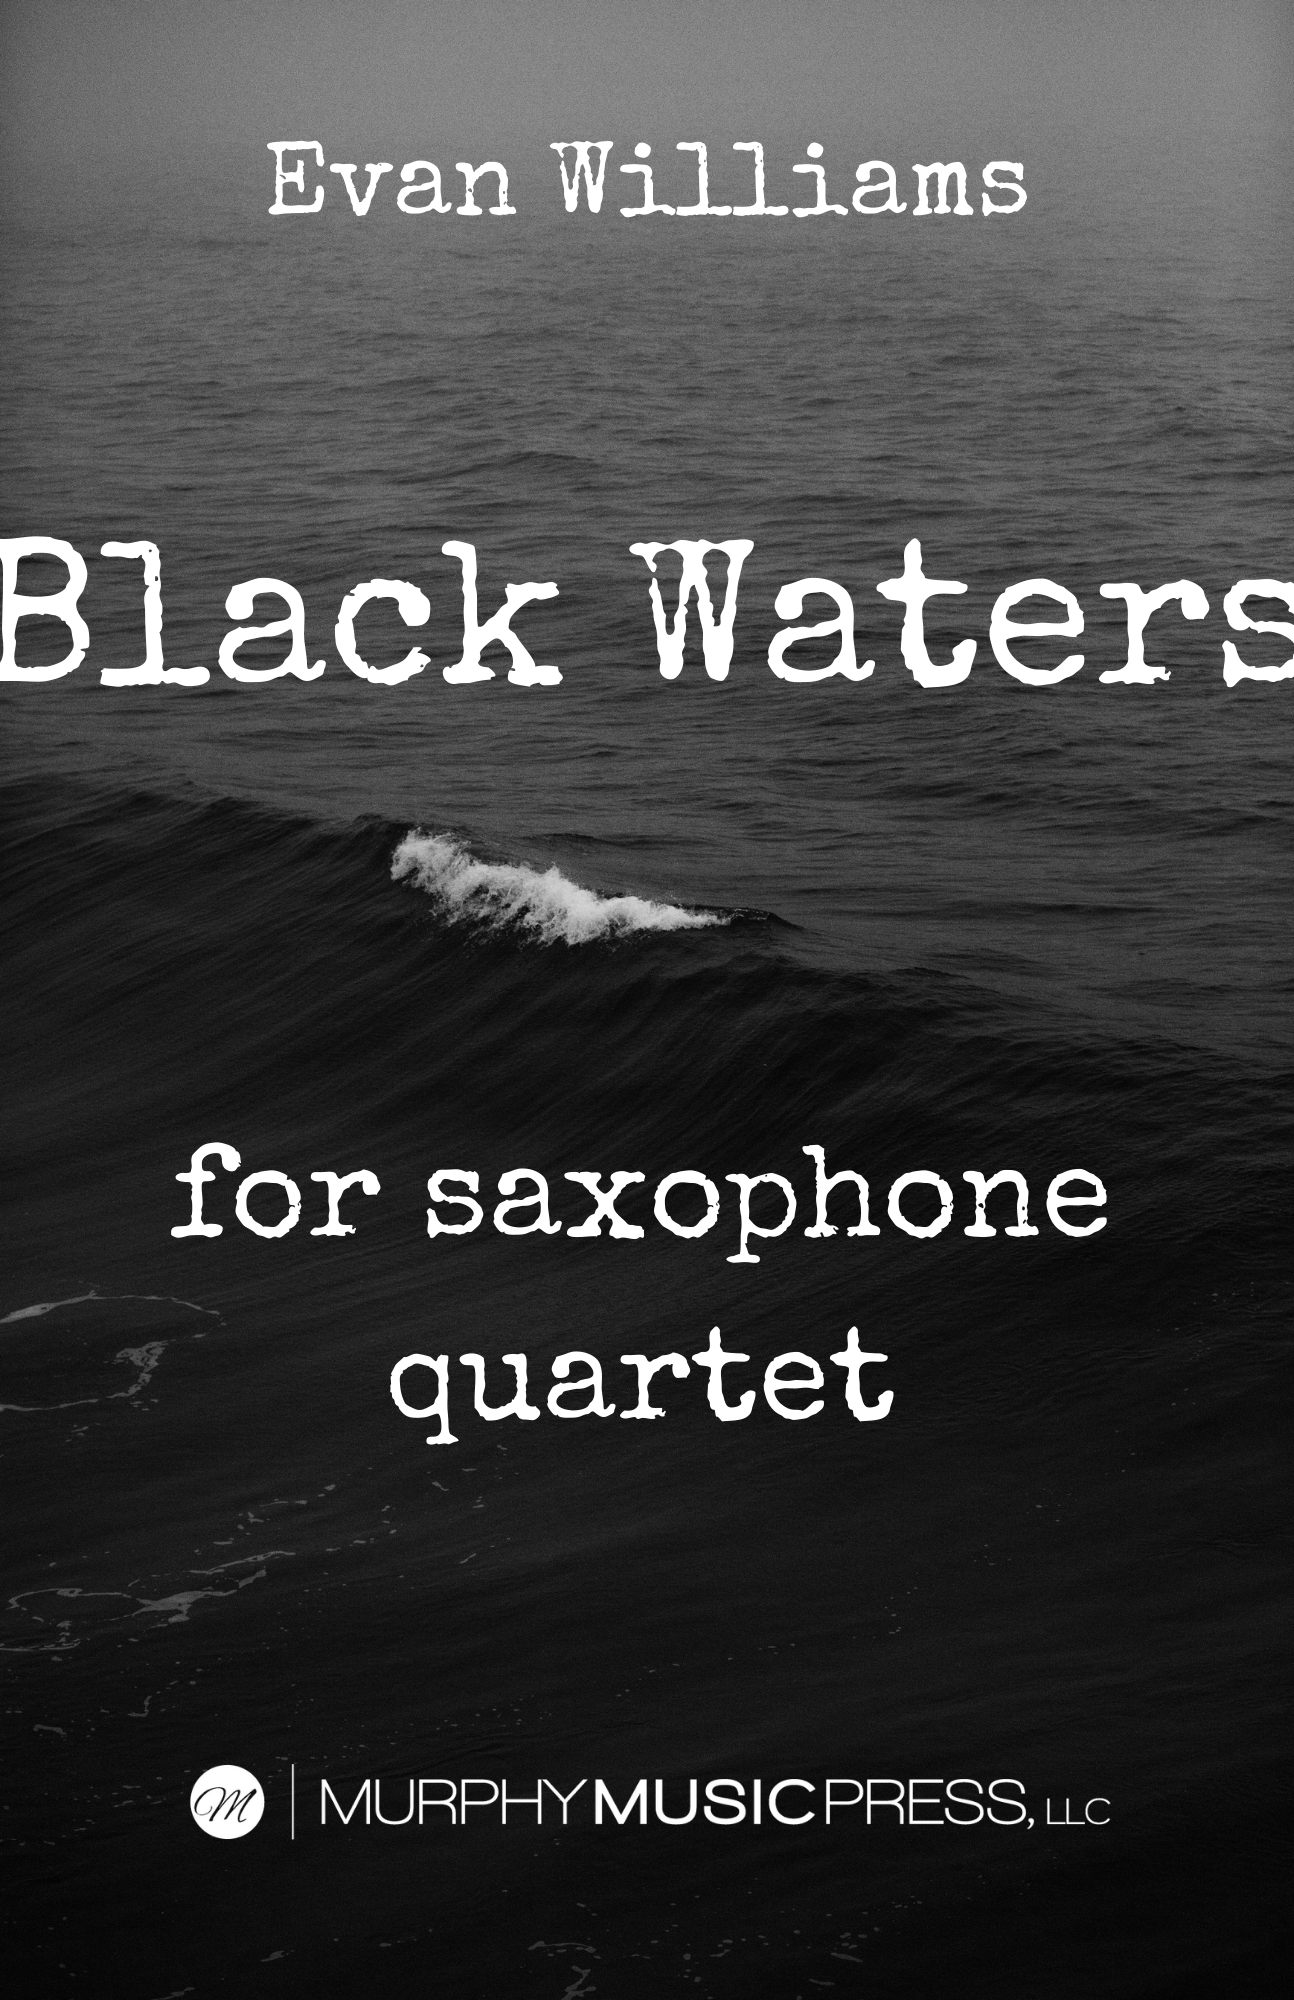 Black Waters by Evan Williams